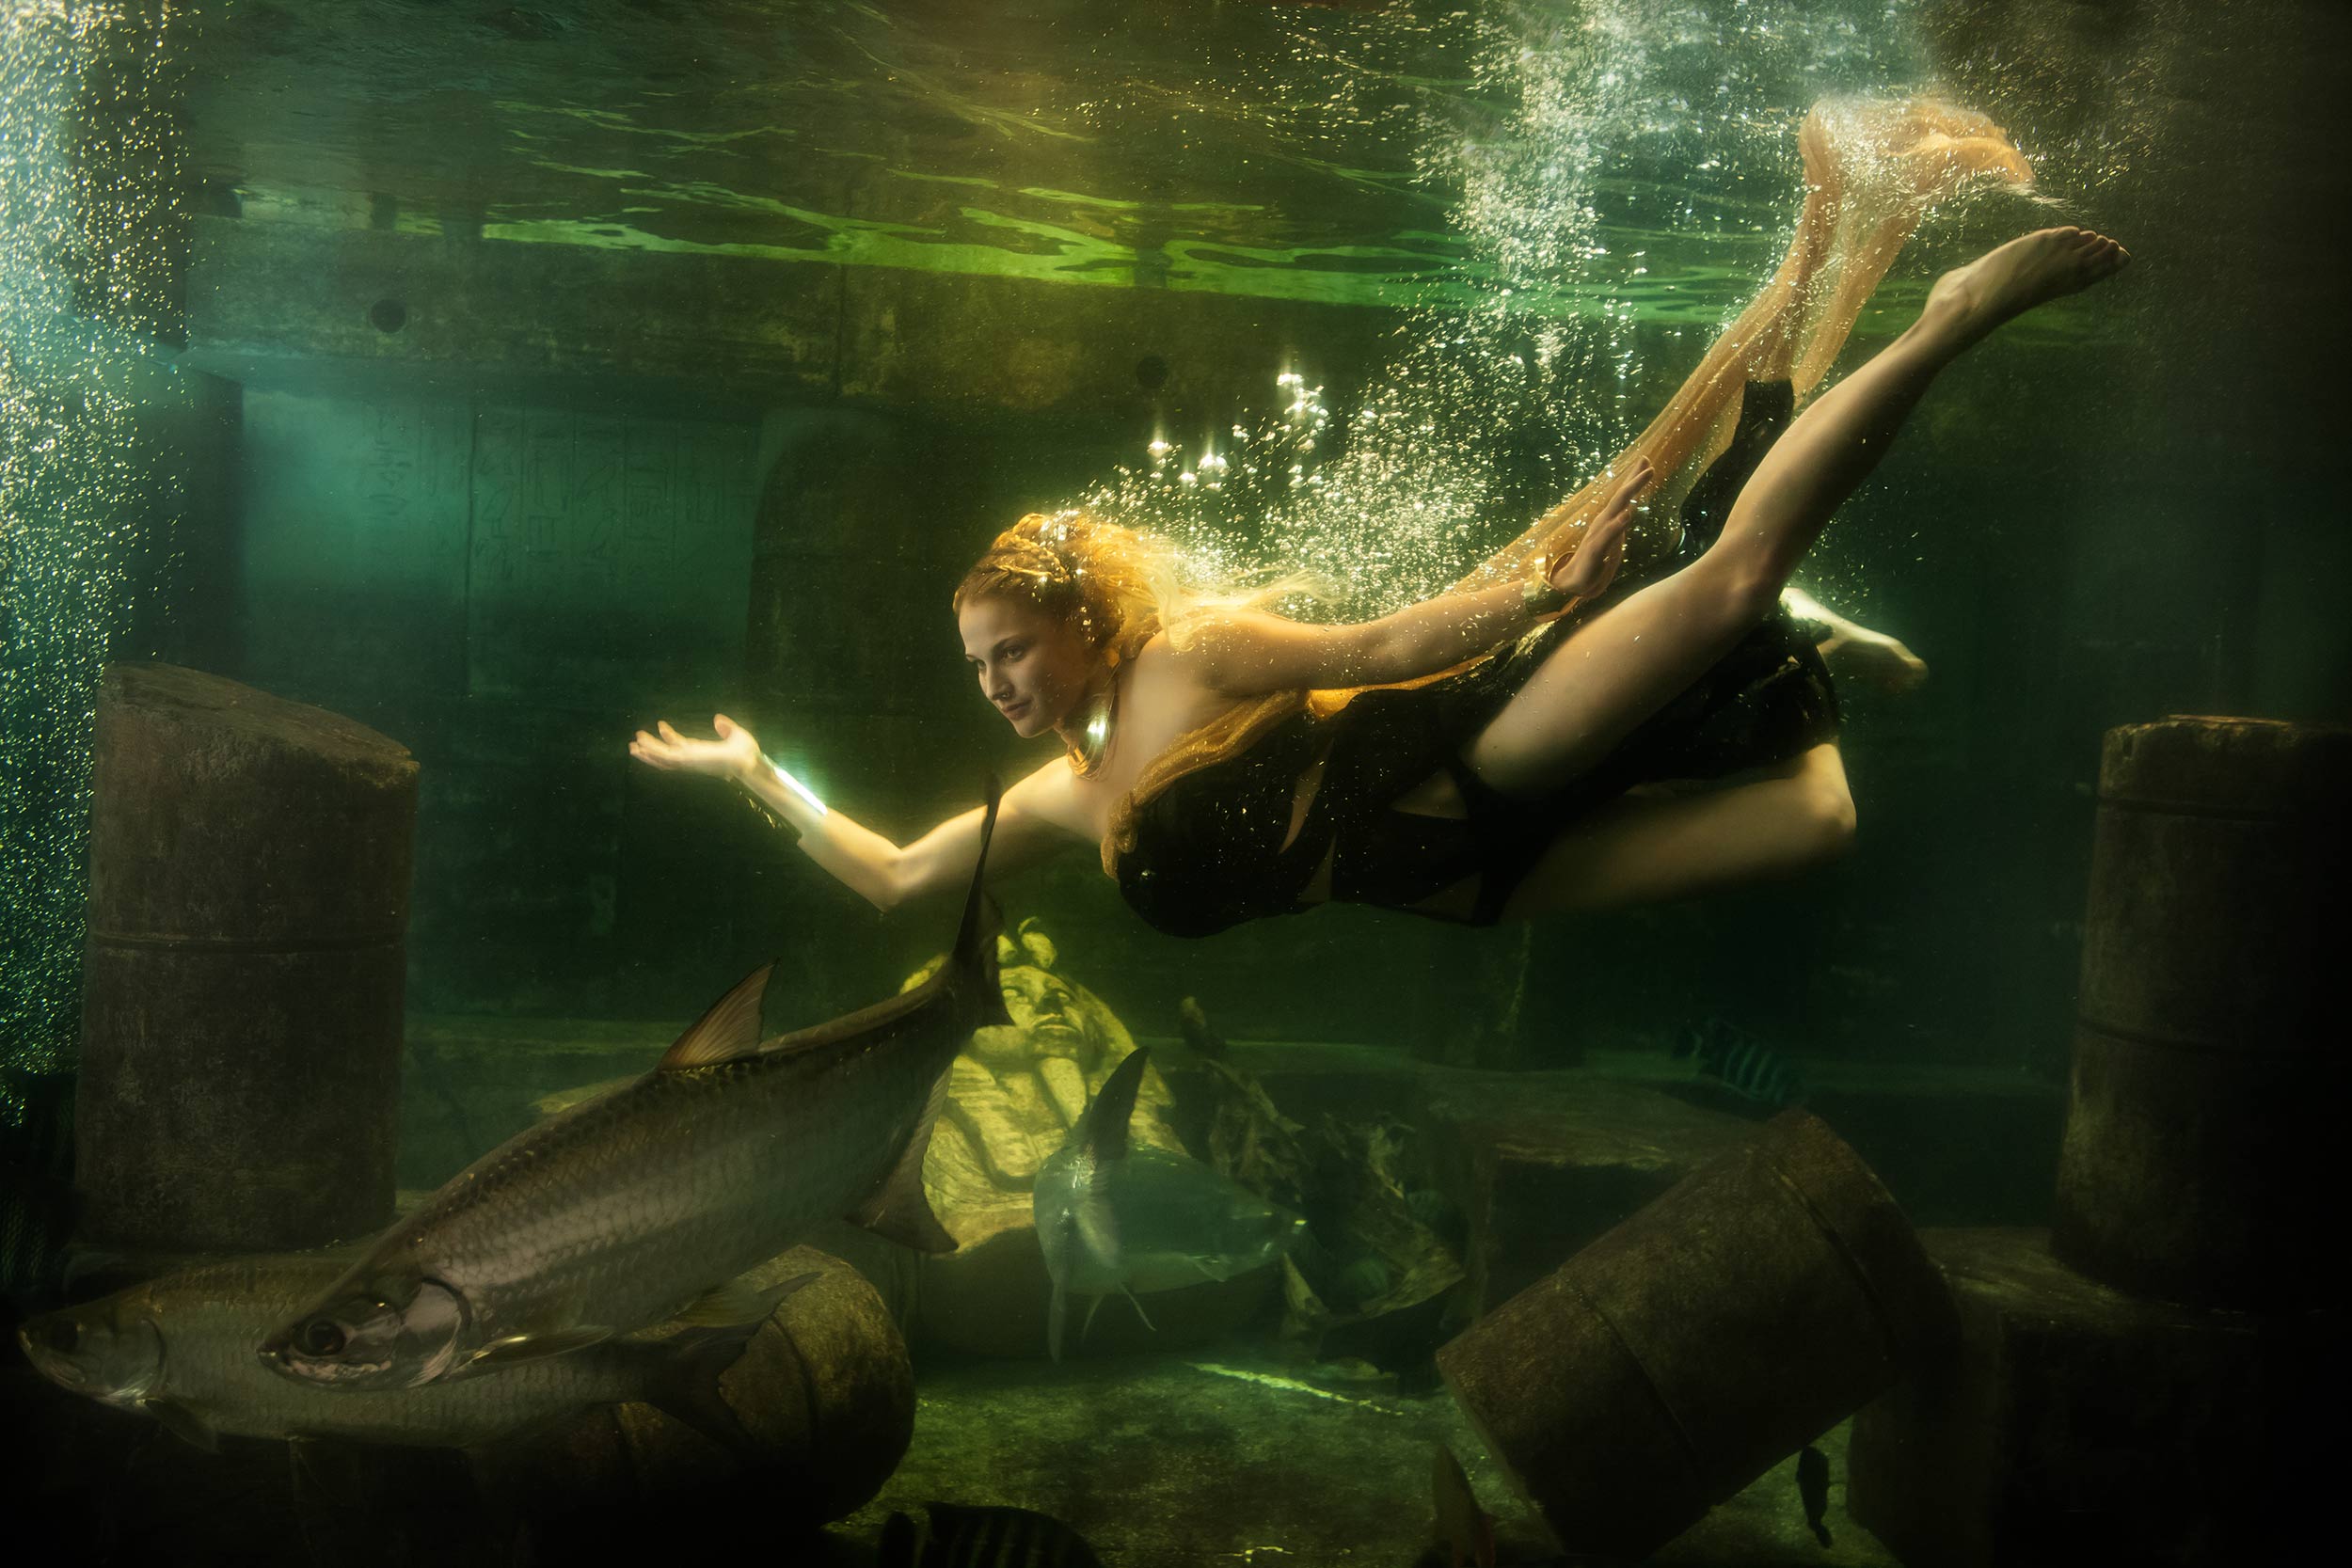 unterwasser unter wasser fotografie fotografieren fotos aufnahmen fotograf schweiz schweizer peter hofstetter